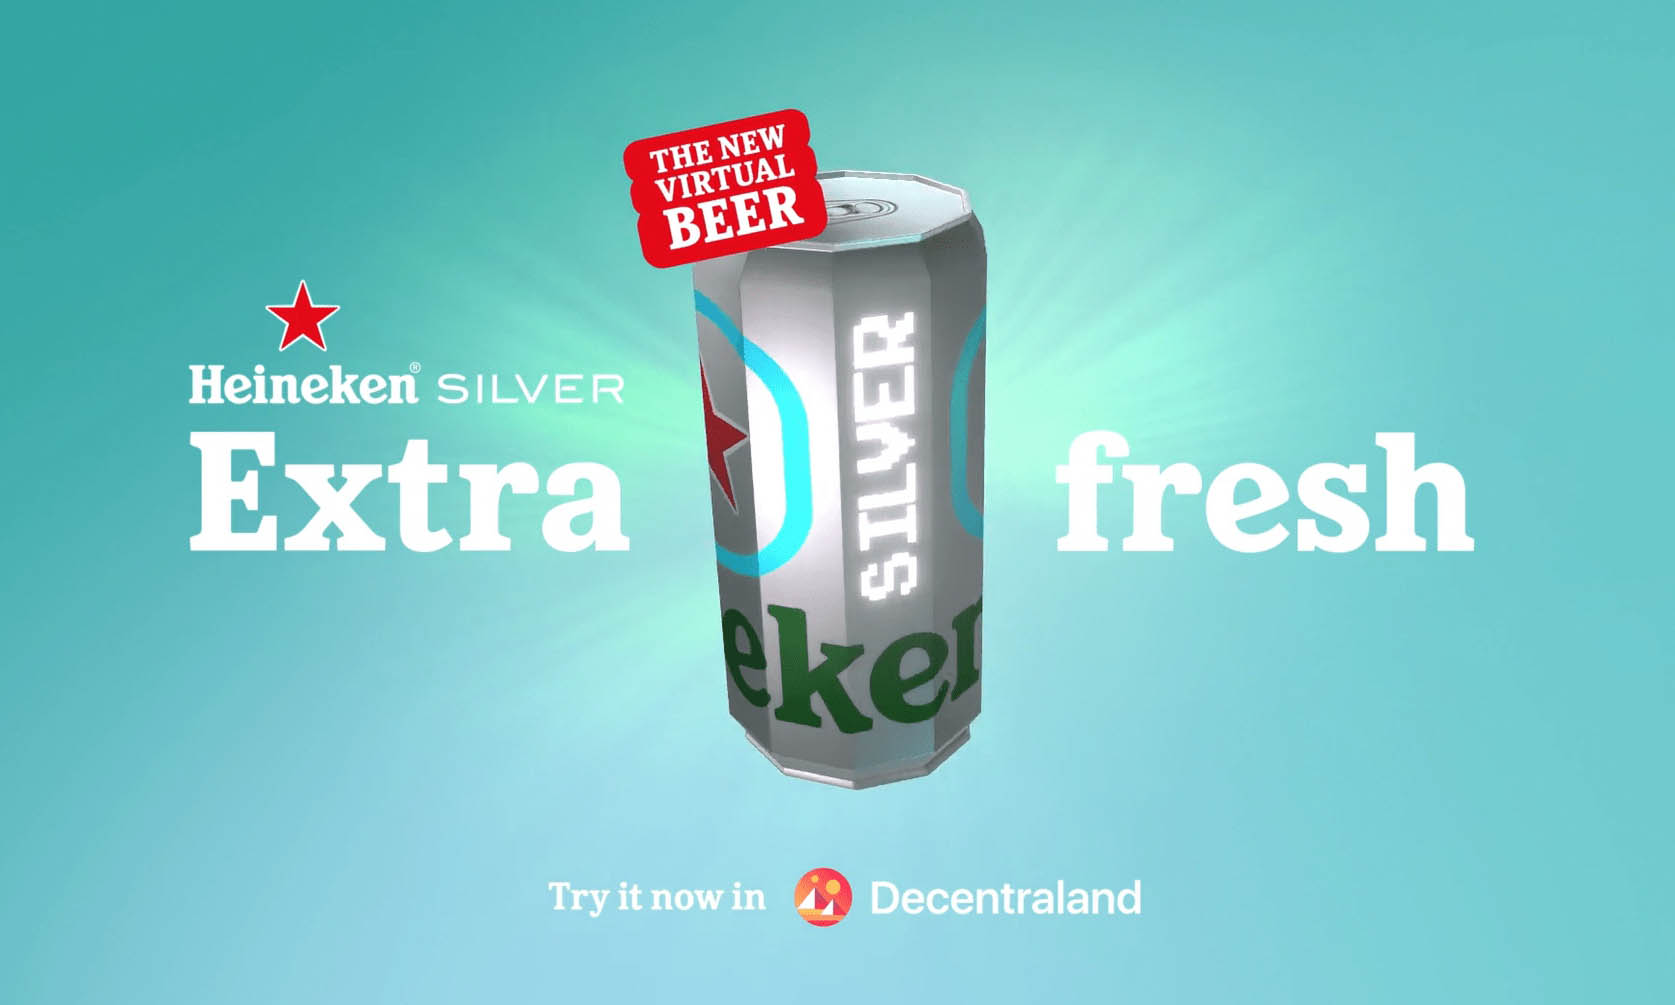 Heineken 在元宇宙推出虚拟啤酒「Heineken Silver」